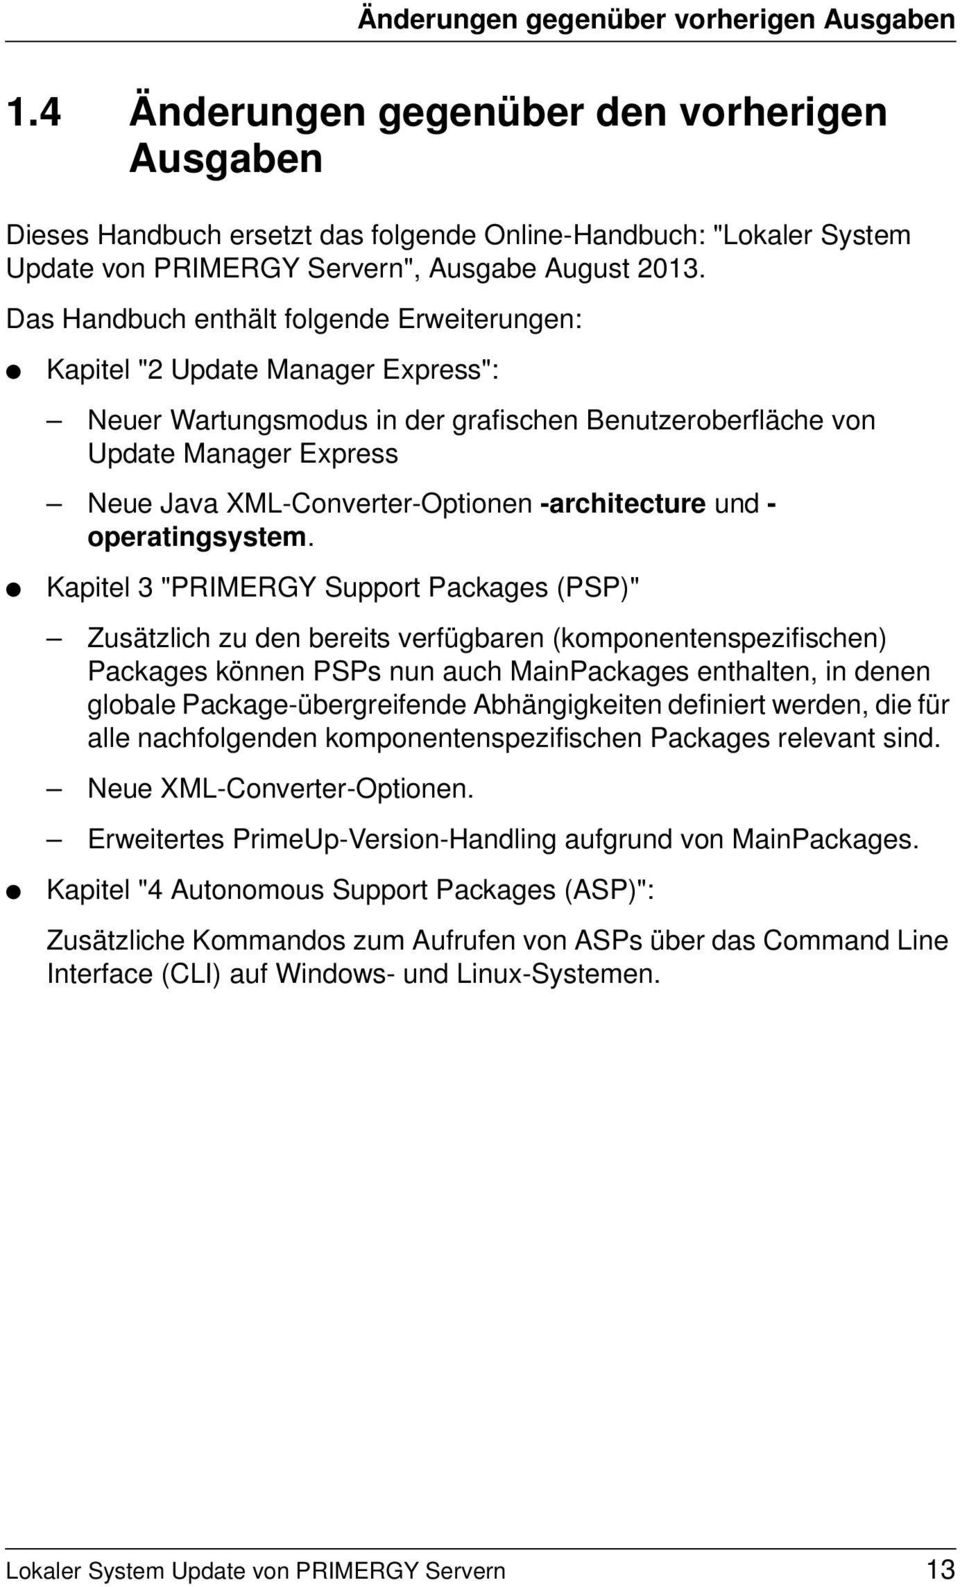 Das Handbuch enthält folgende Erweiterungen: Kapitel "2 Update Manager Express": Neuer Wartungsmodus in der grafischen Benutzeroberfläche von Update Manager Express Neue Java XML-Converter-Optionen